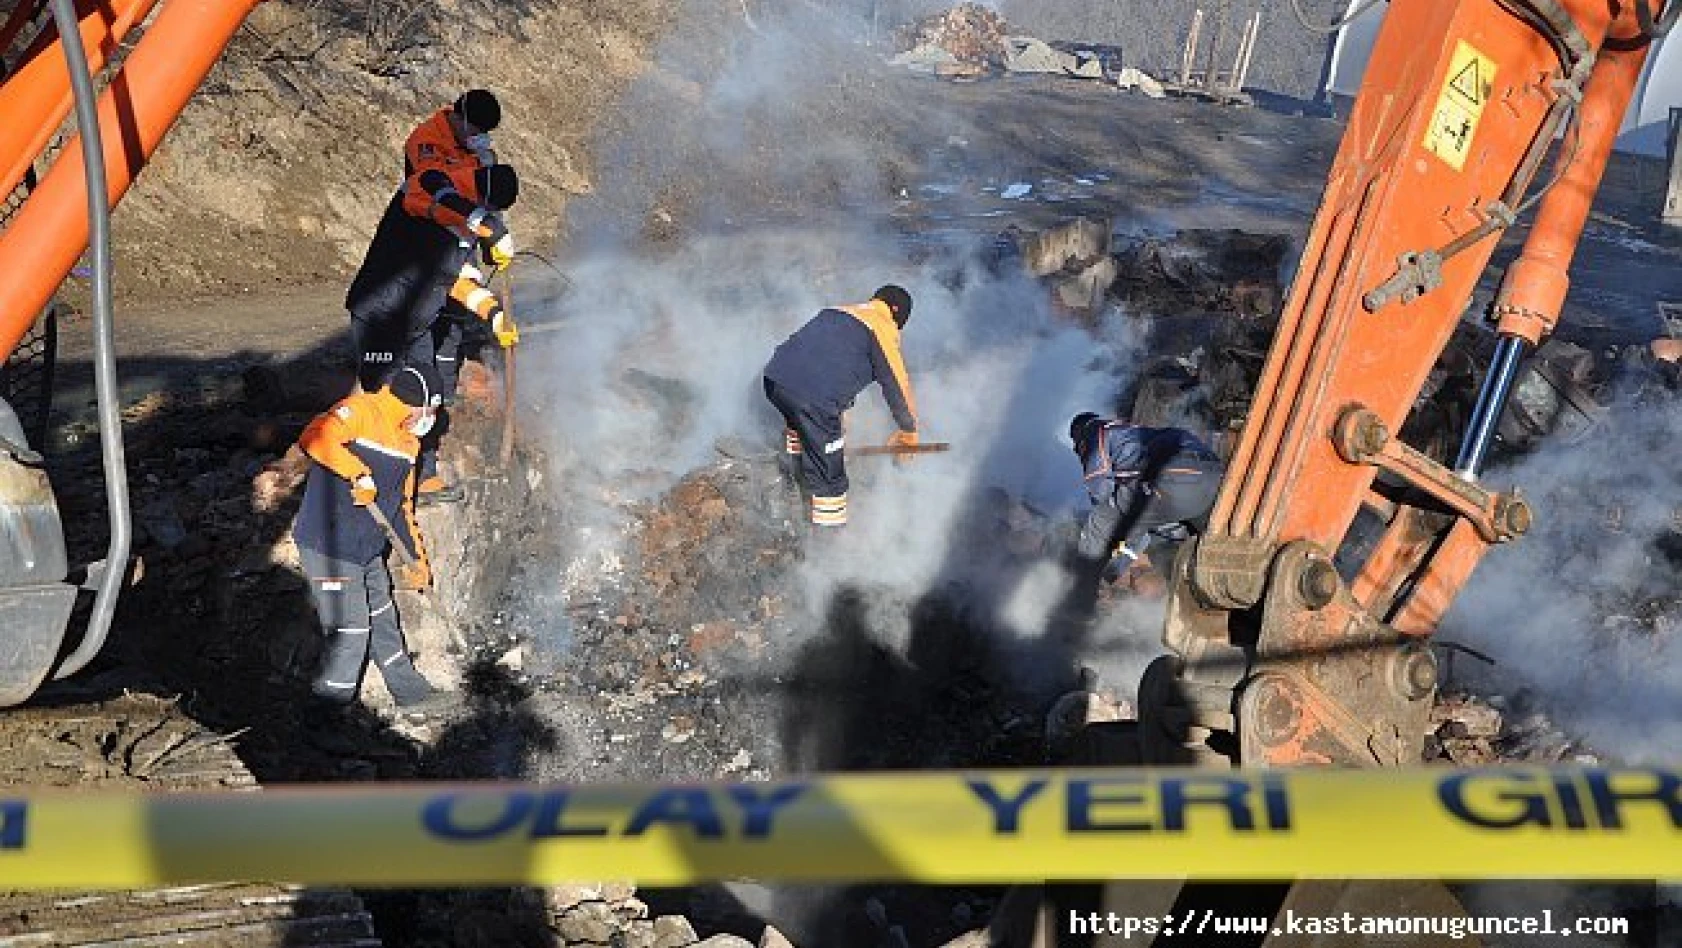 Kastamonu'daki yangında bir kişinin cesedine ulaşıldı